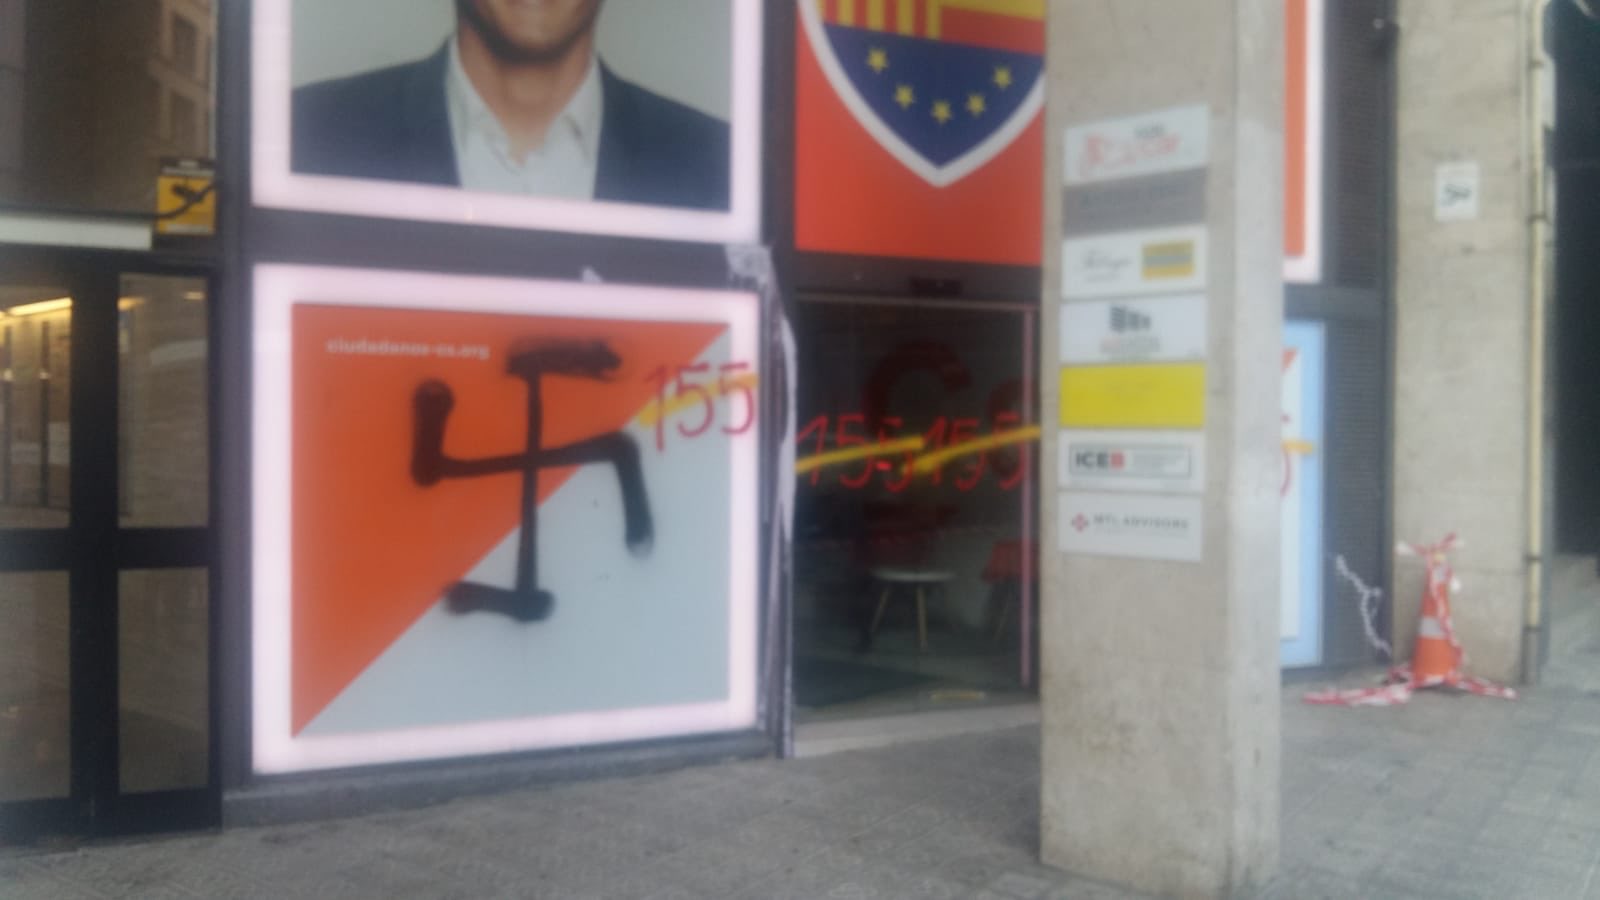 La sede de Ciudadanos en Barcelona, atacada por radicales con pintadas de cruces nazis